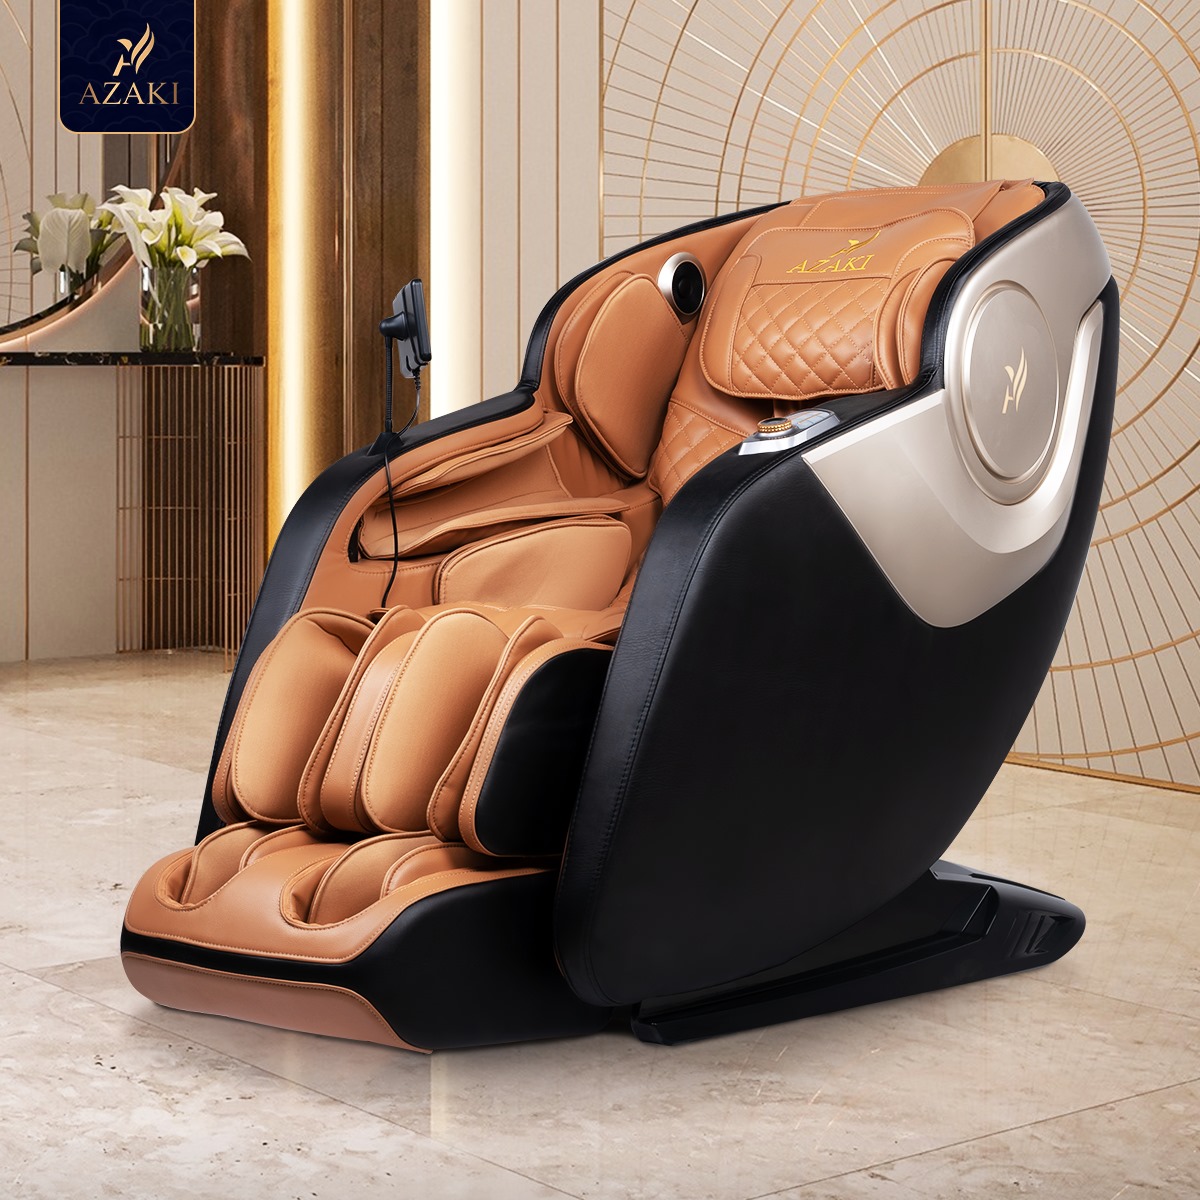 
Khám phá công nghệ áp dụng trên ghế massage Azaki - Ảnh 3.